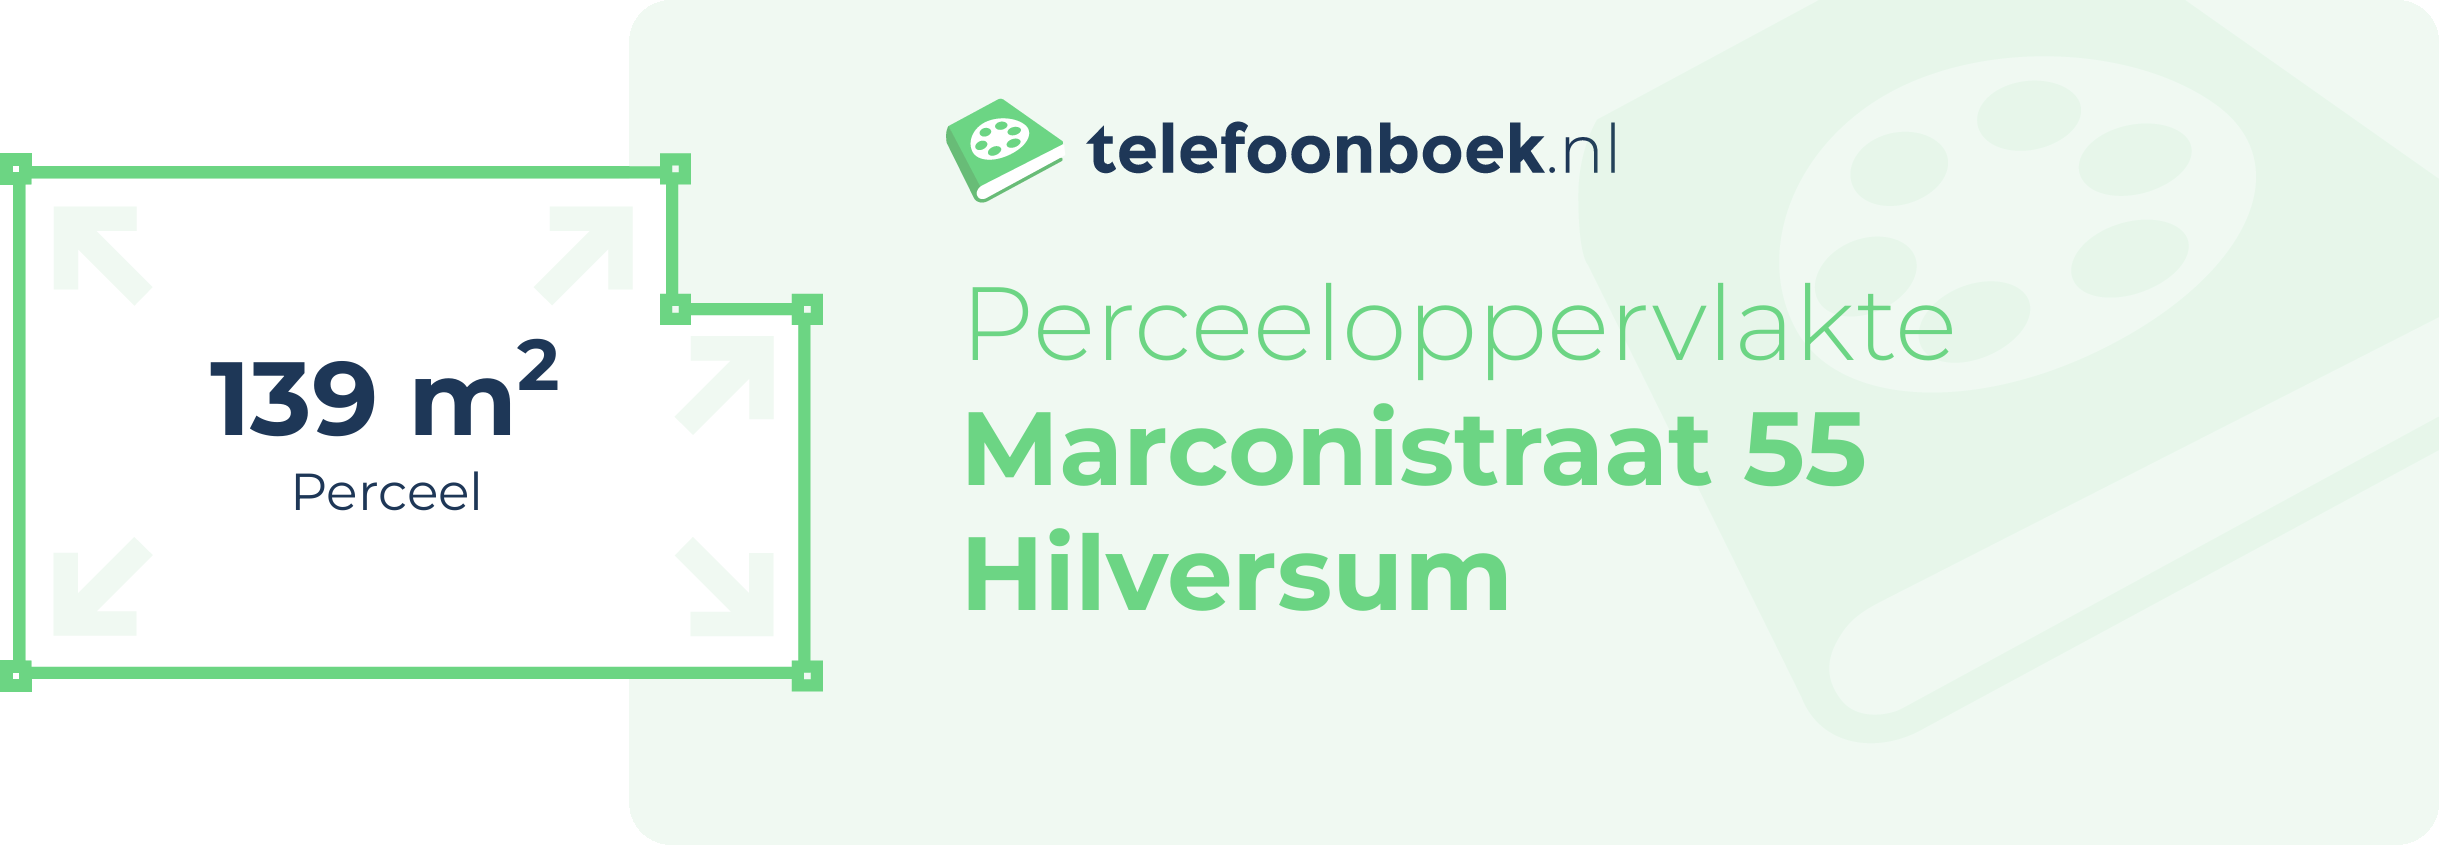 Perceeloppervlakte Marconistraat 55 Hilversum